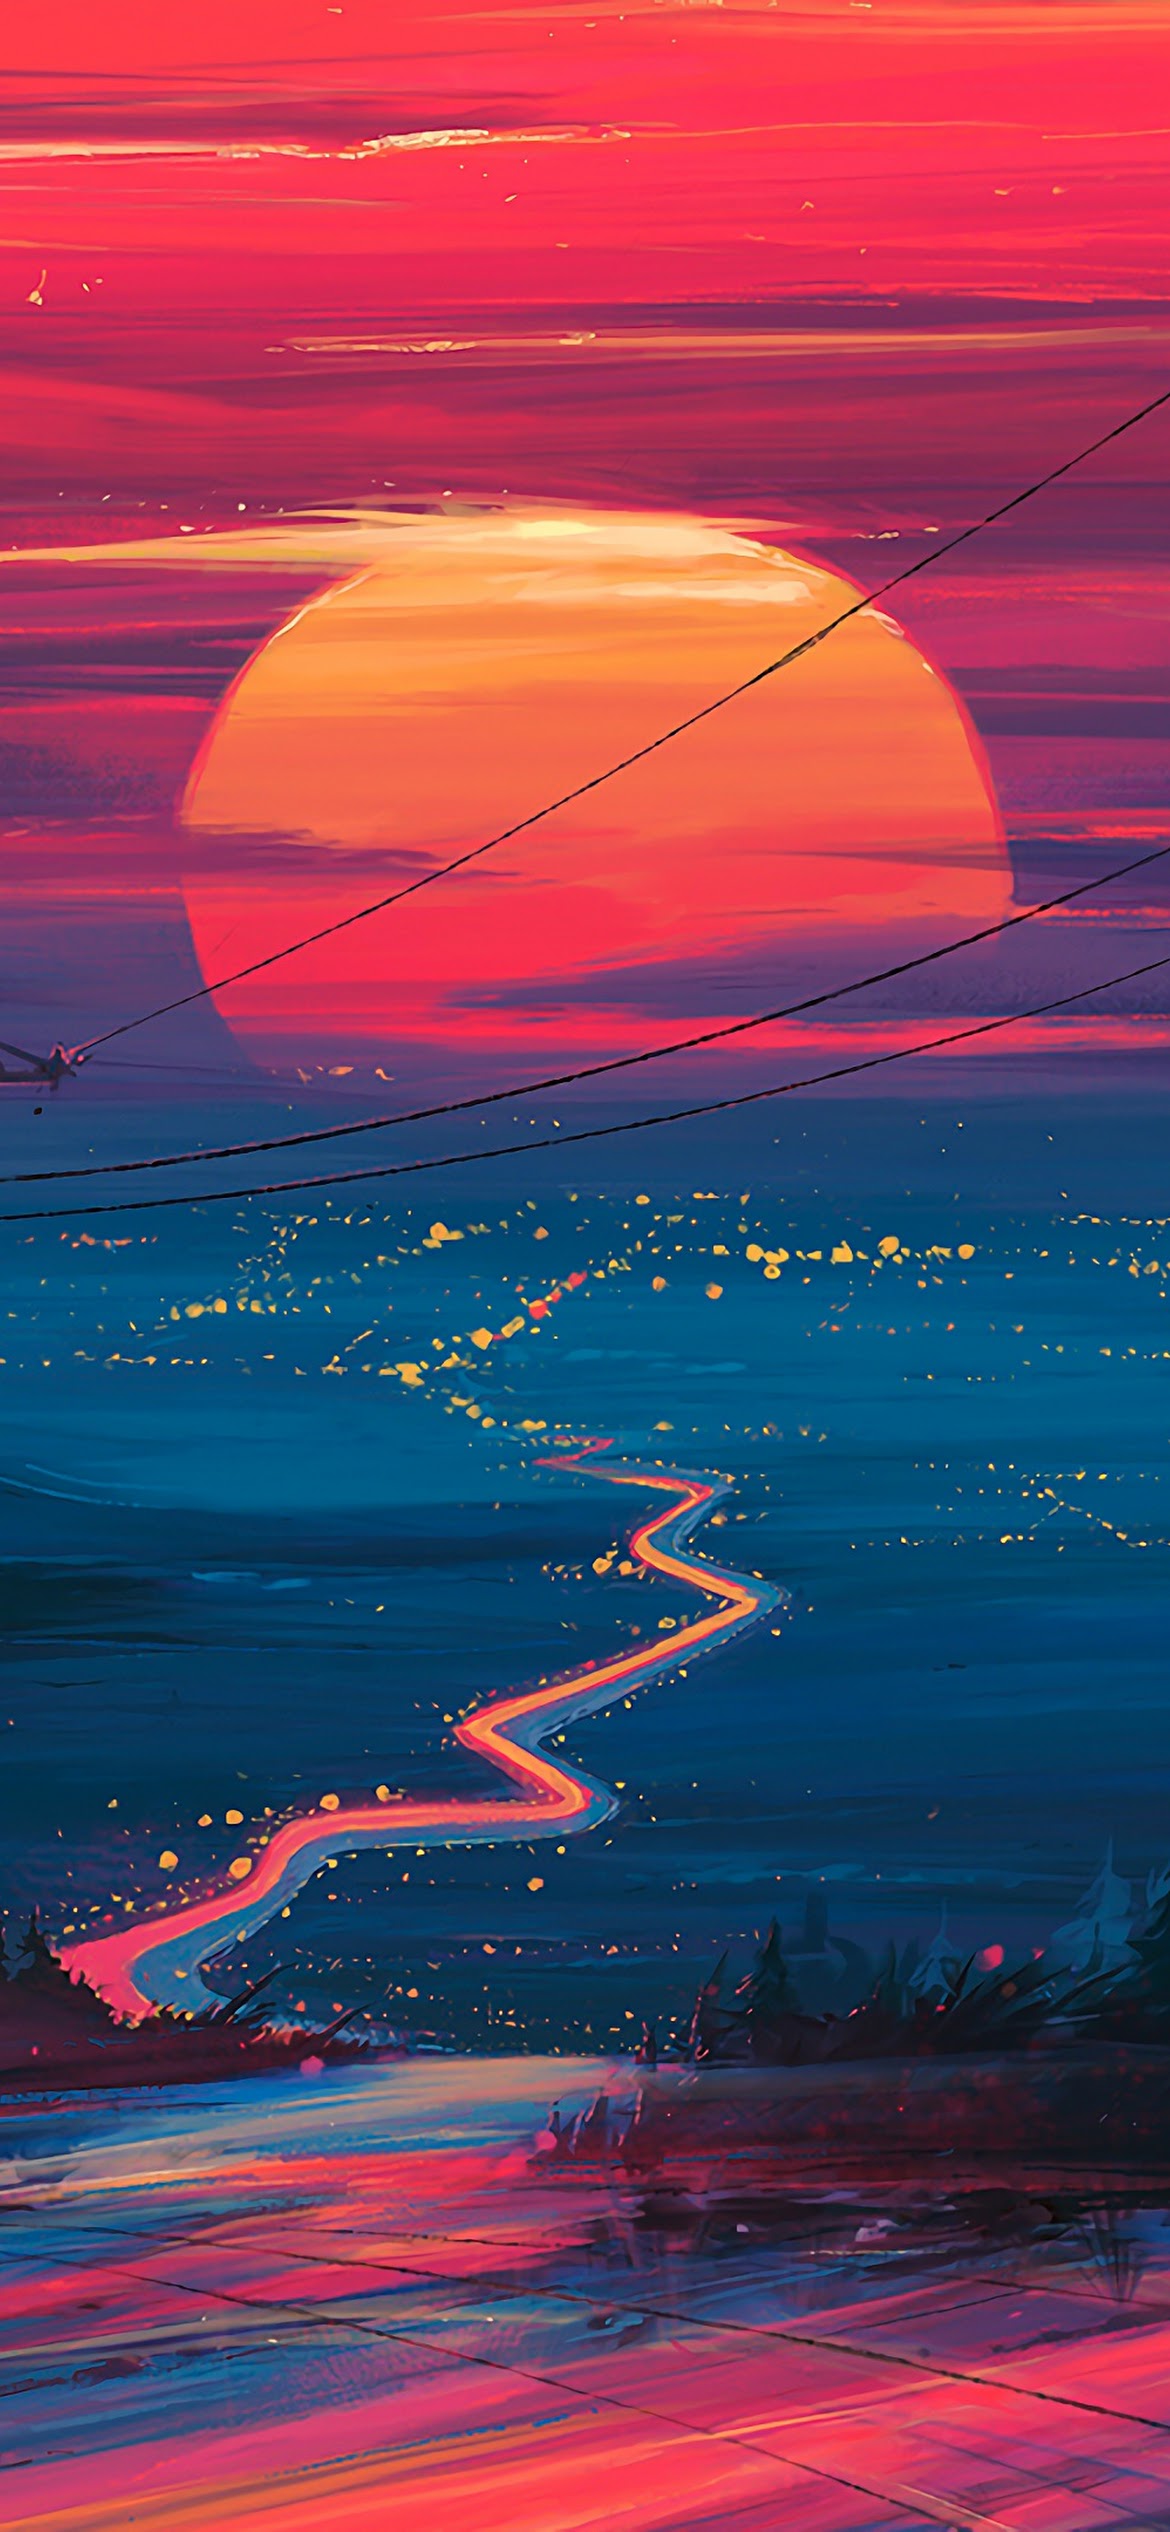 Sunset Horizon Scenery Landscape Art 4k Wallpaper